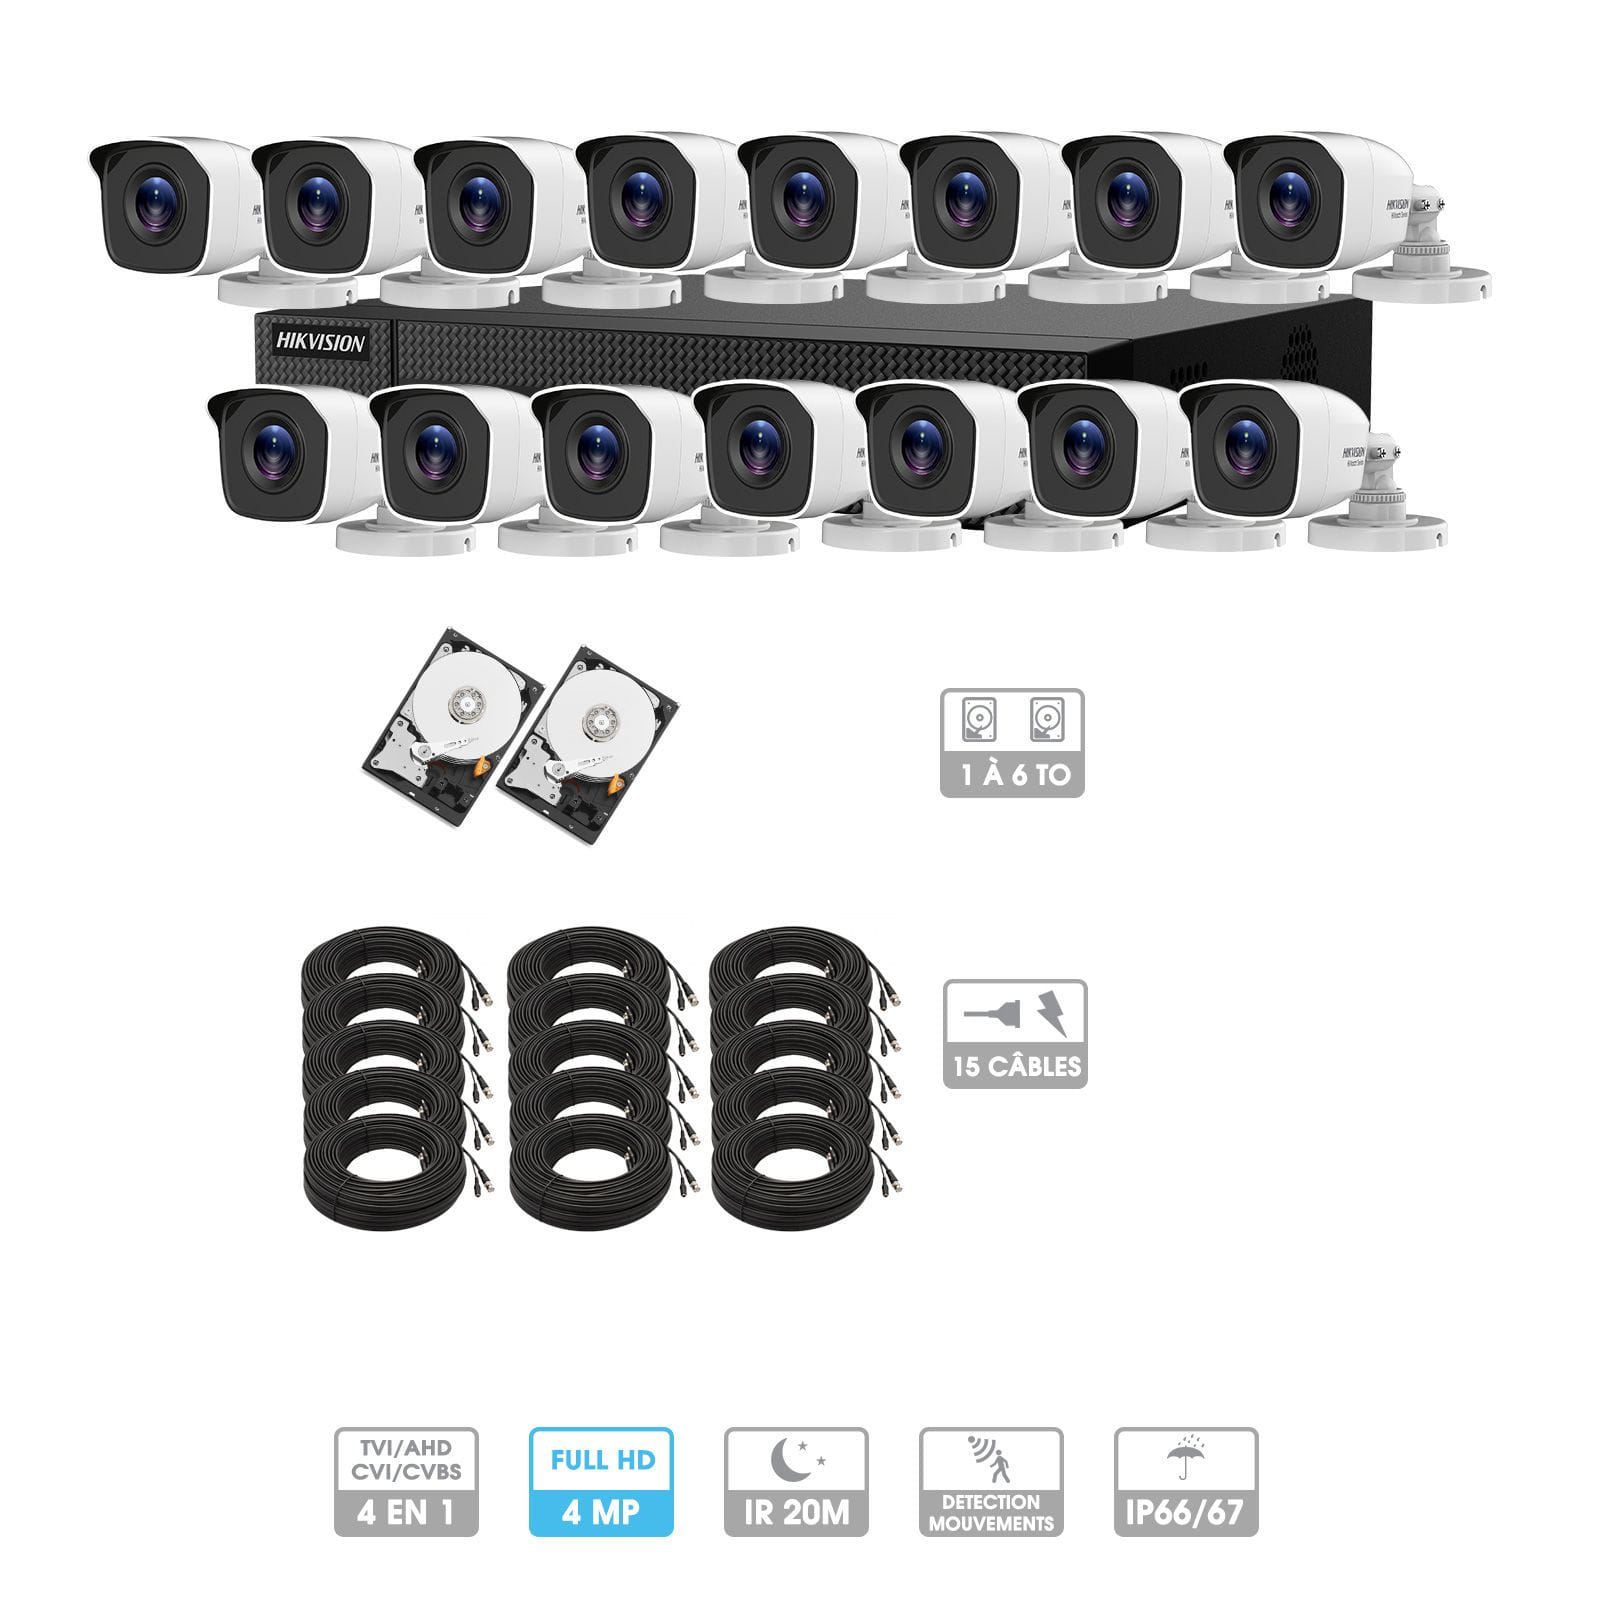 Kit vidéosurveillance 15 caméras | 4MP HD | 15 câbles 20 mètres | 2 HDD 1à 6 To | Tube Hiwatch